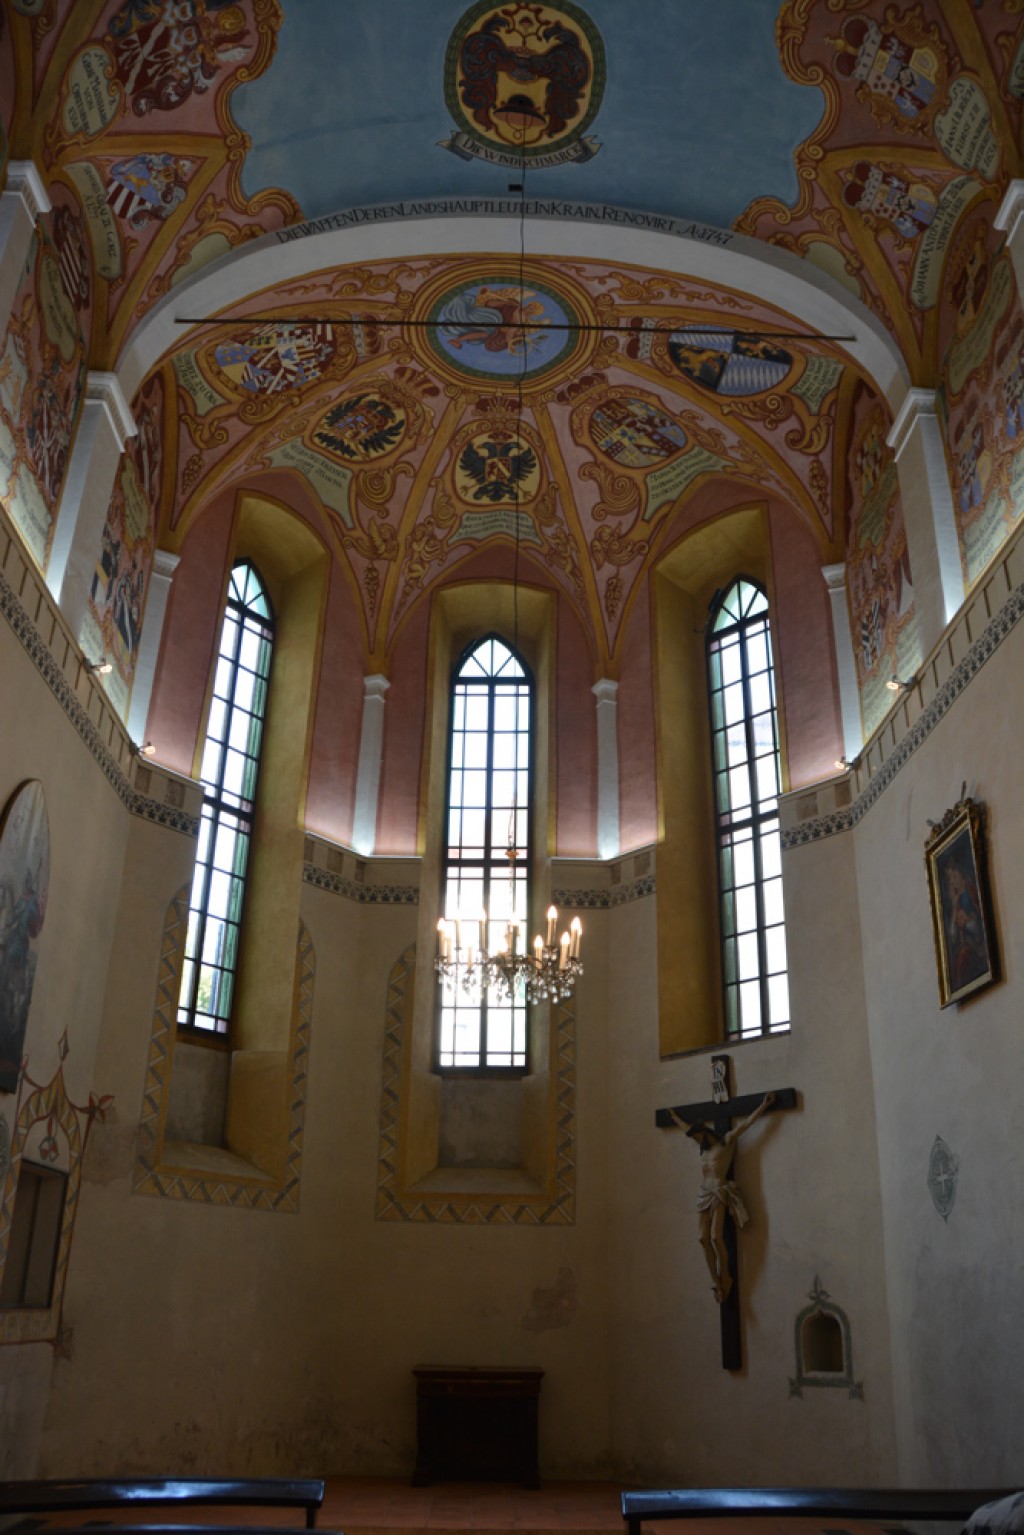 Chapel inside the Castle